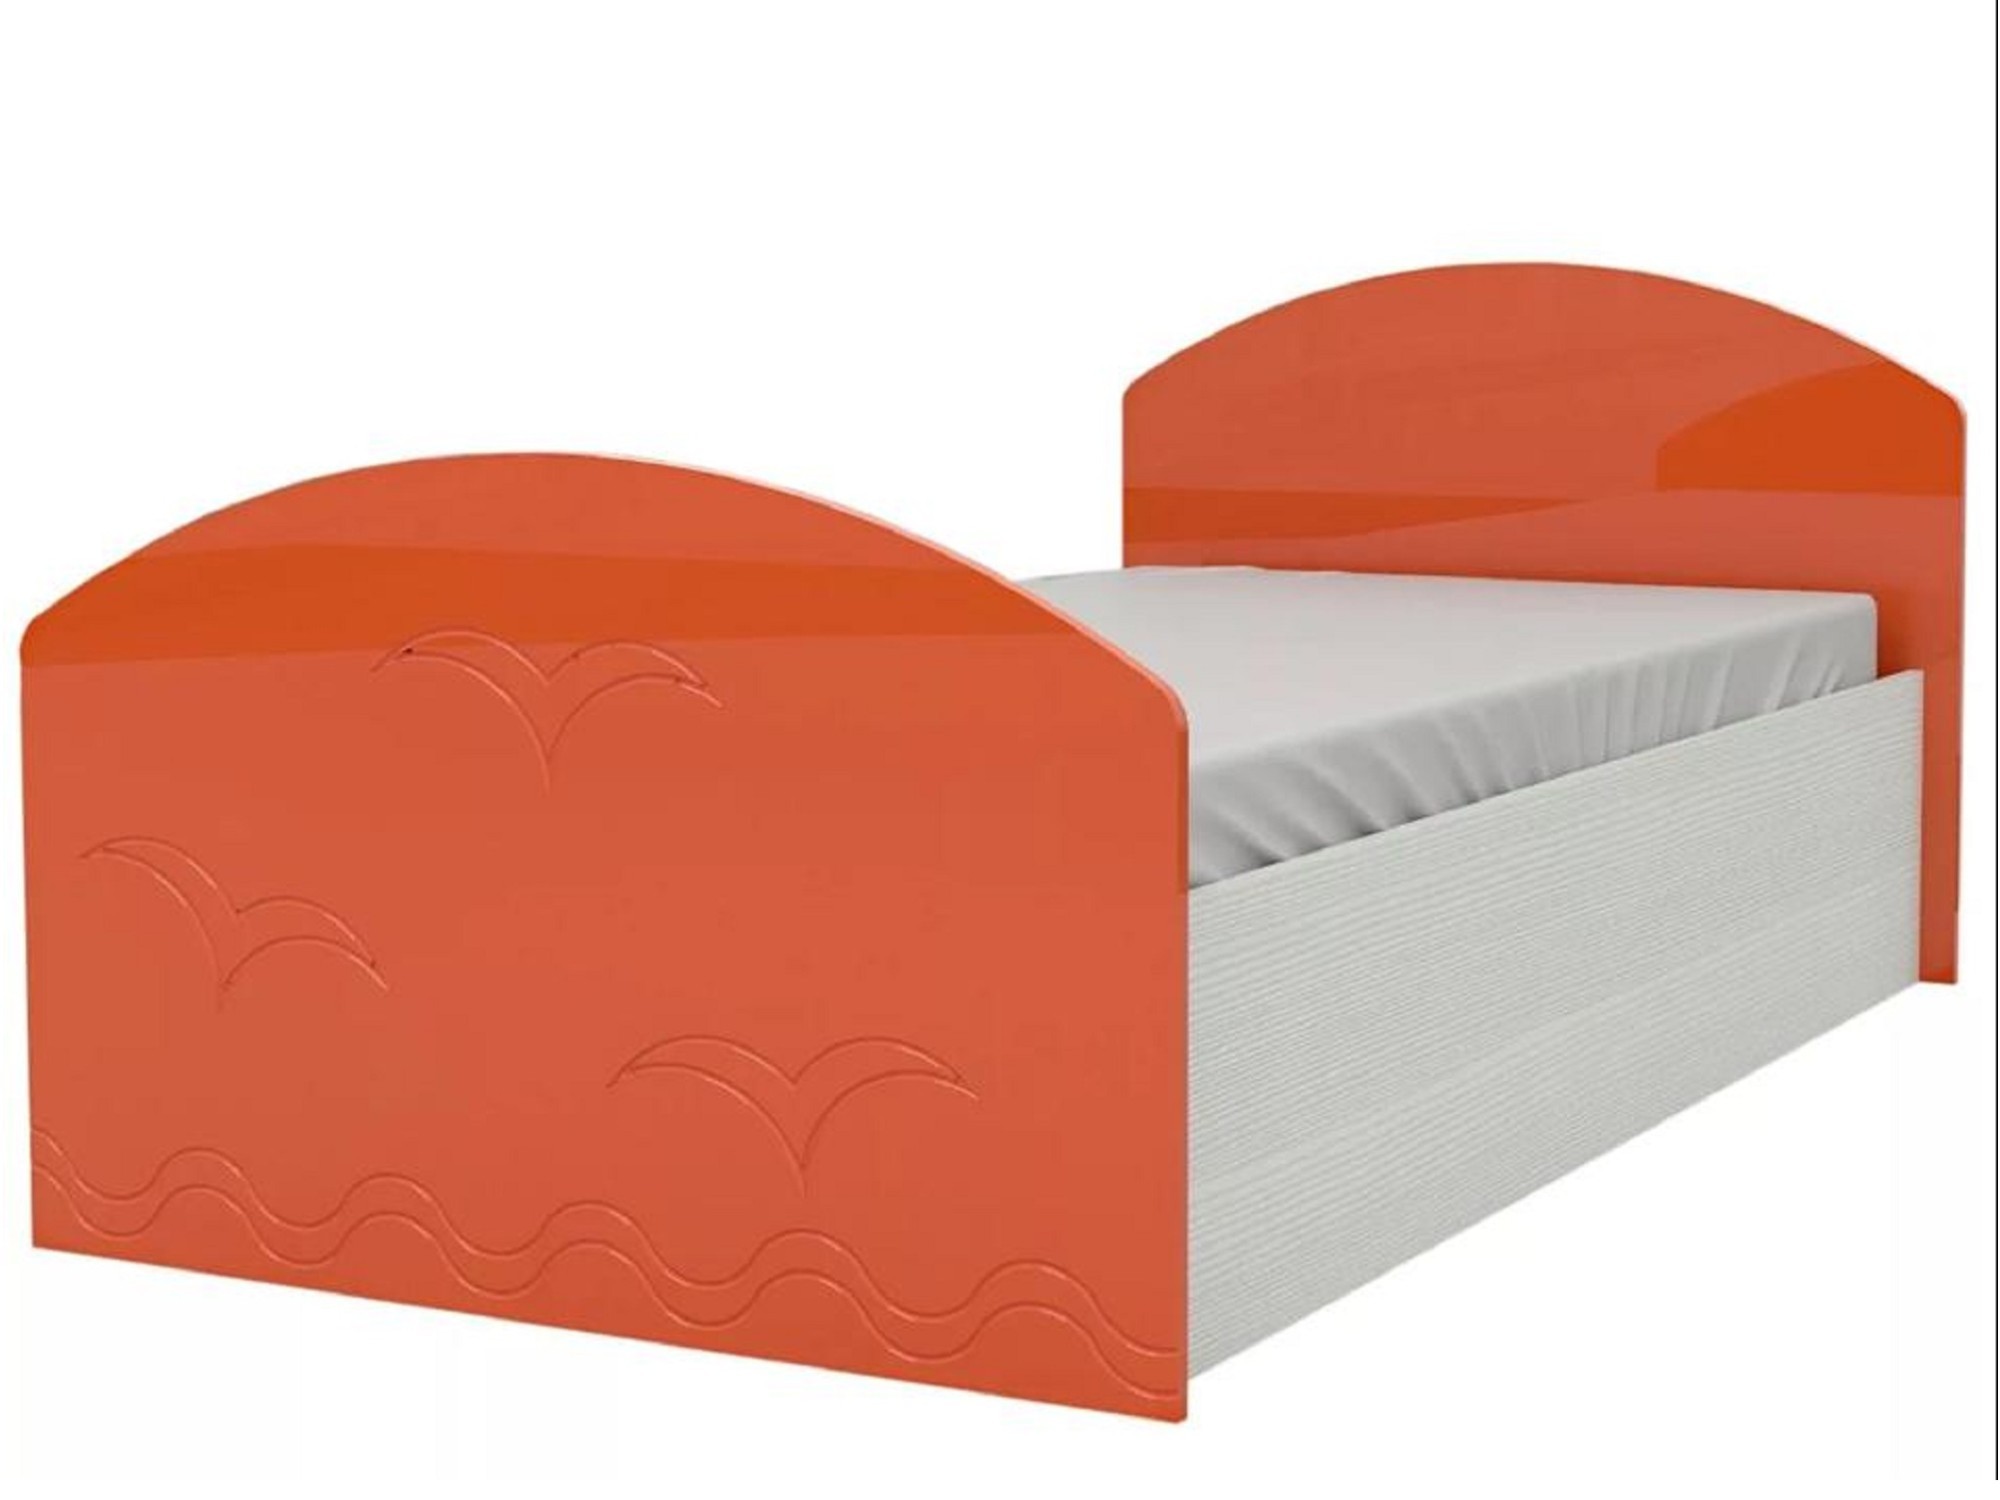 Юниор-2 Детская кровать 80, металлик (Оранжевый металлик, Дуб белёный) Оранжевый металлик, МДФ, ЛДСП юниор 1 двухъярусная кровать 80 бирюза металлик дуб белёный зеленый лдсп